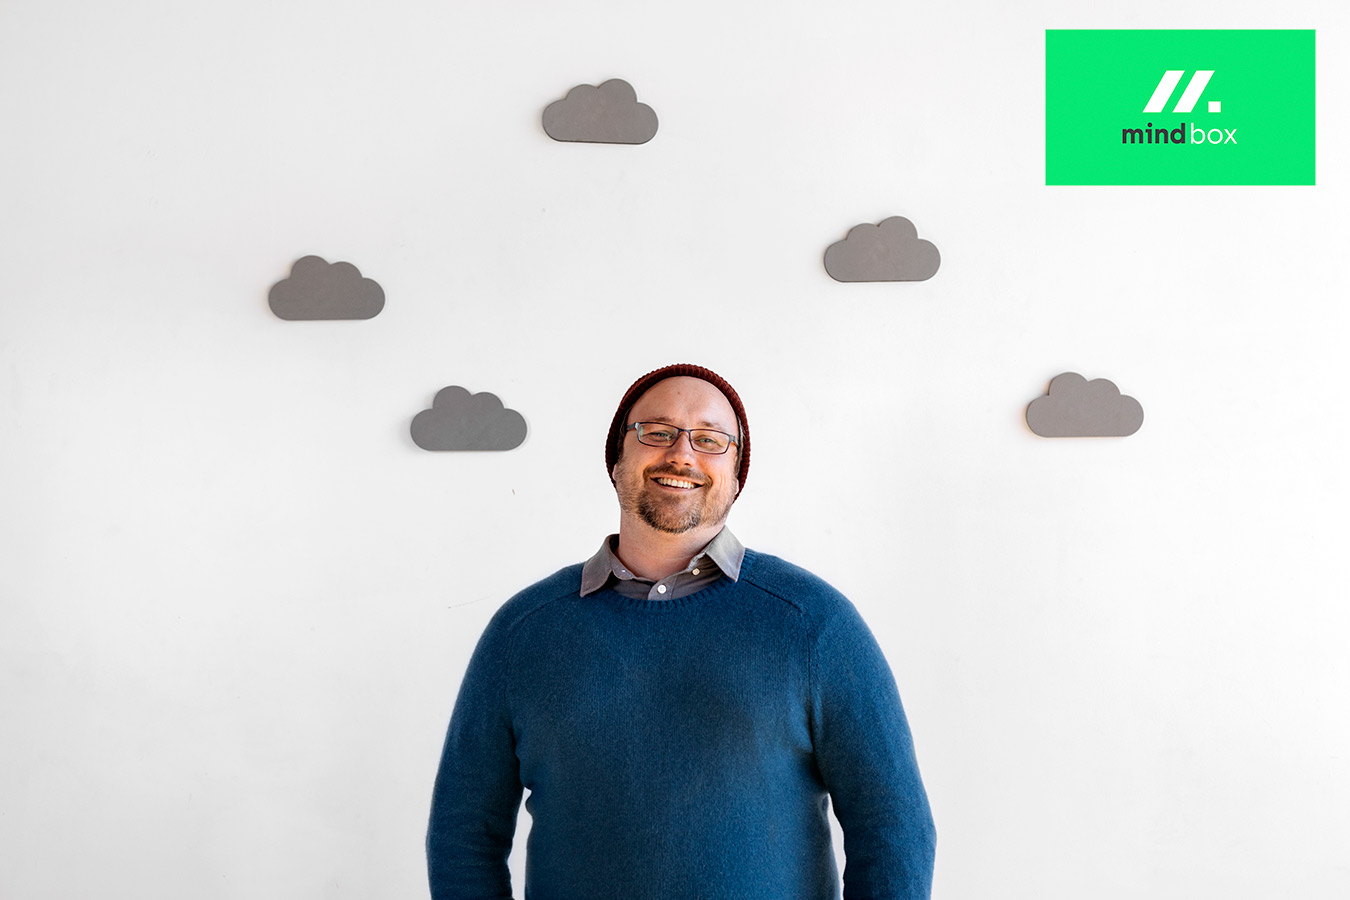 cloud native pomagamo podjetjem, kot je vaše, uspeti v oblačni dobi